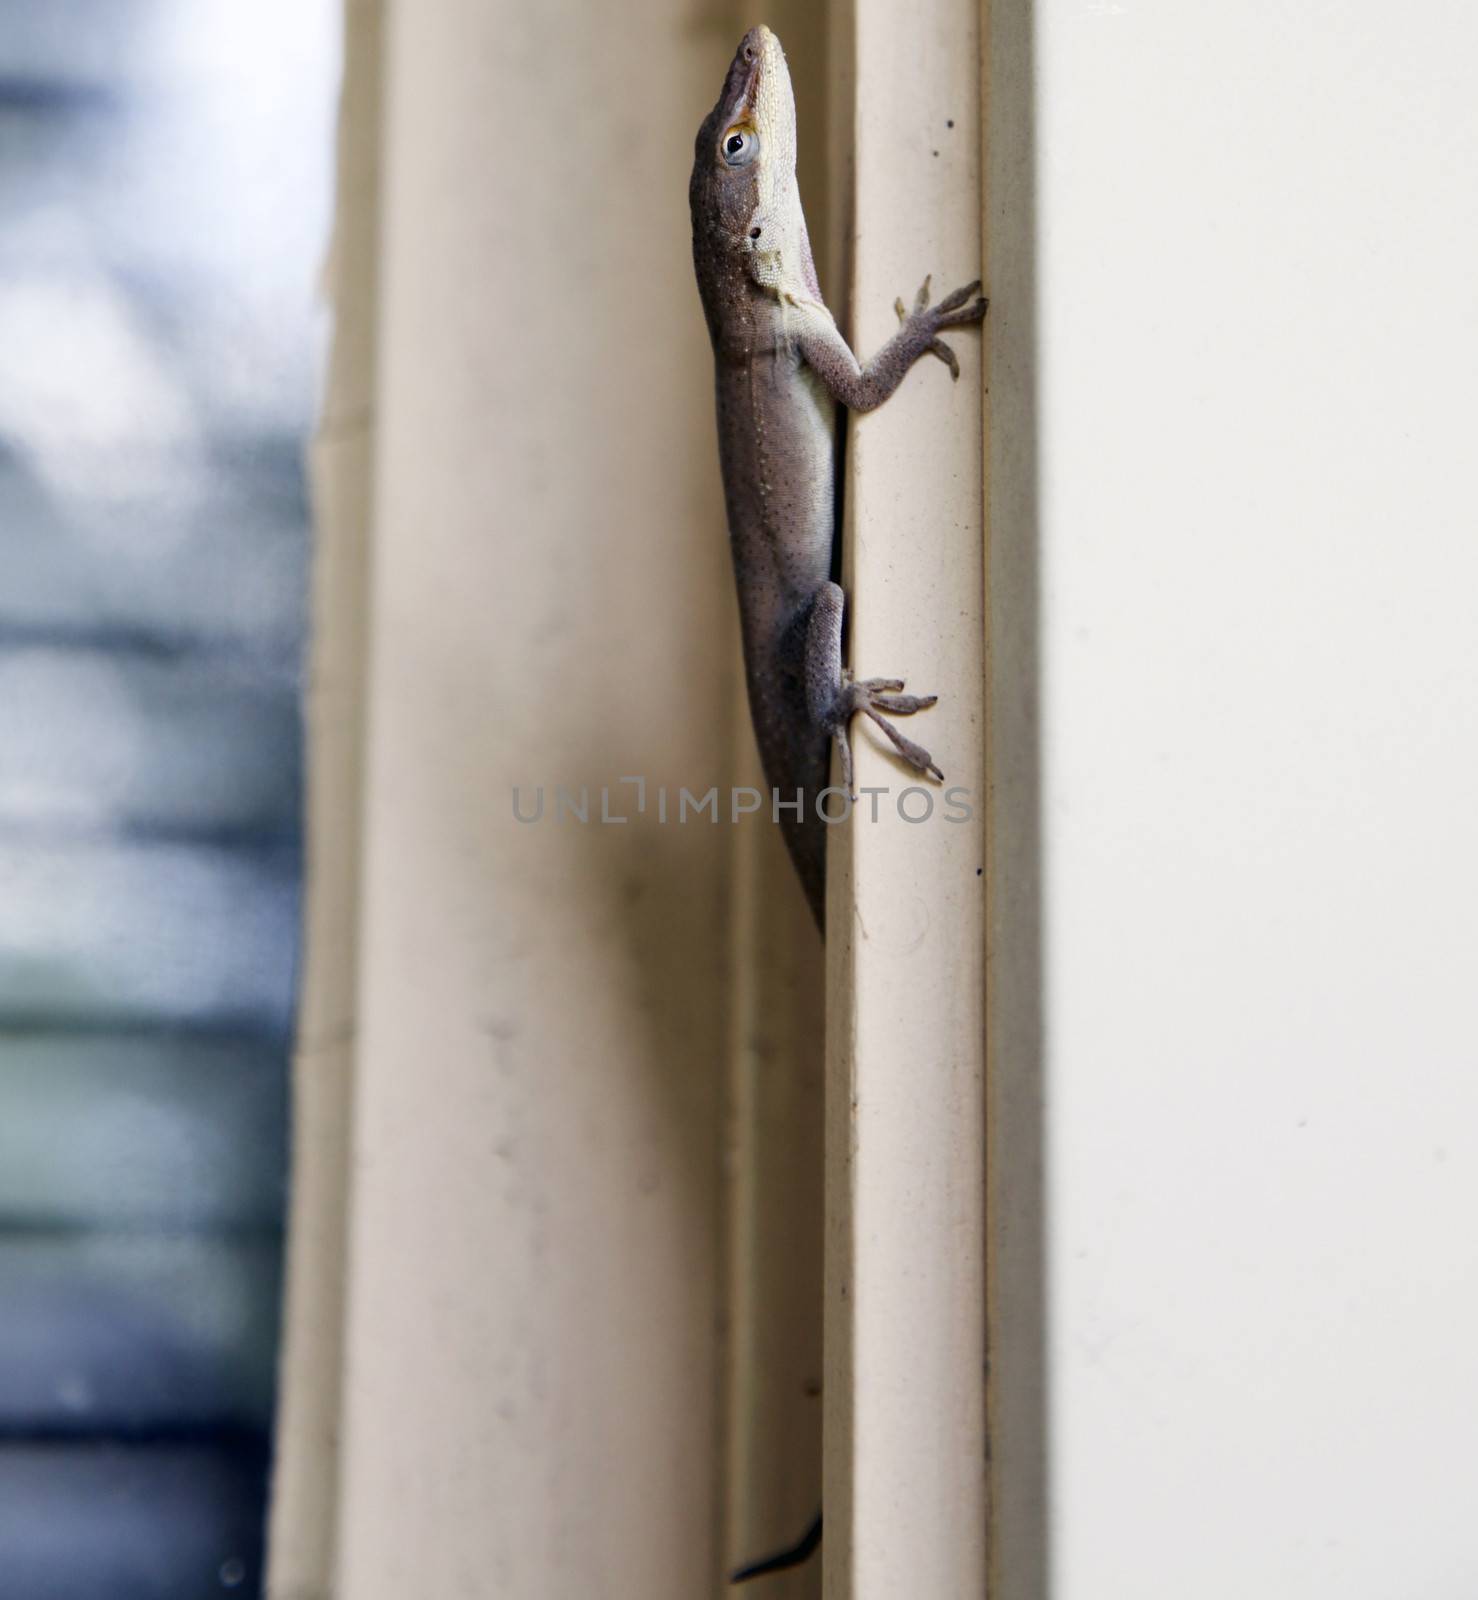 Brown anole lizard climbing window frame